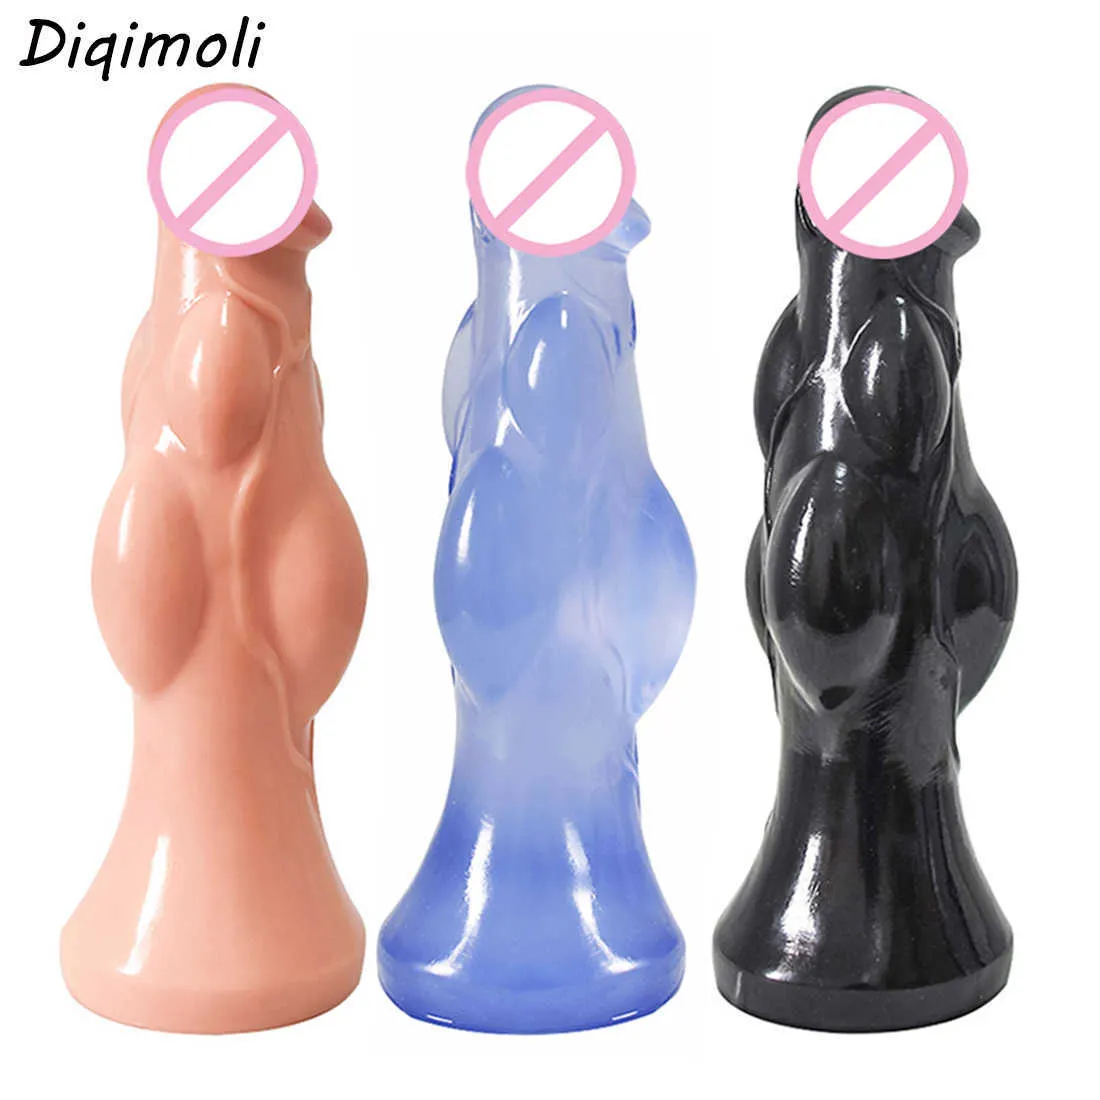 Güzellik Ürünleri Emme fincanı büyük boy kaslı dildolar vajina ve anüs büyük penis anal fiş yumuşak dilator kadınlar için seksi oyuncaklar